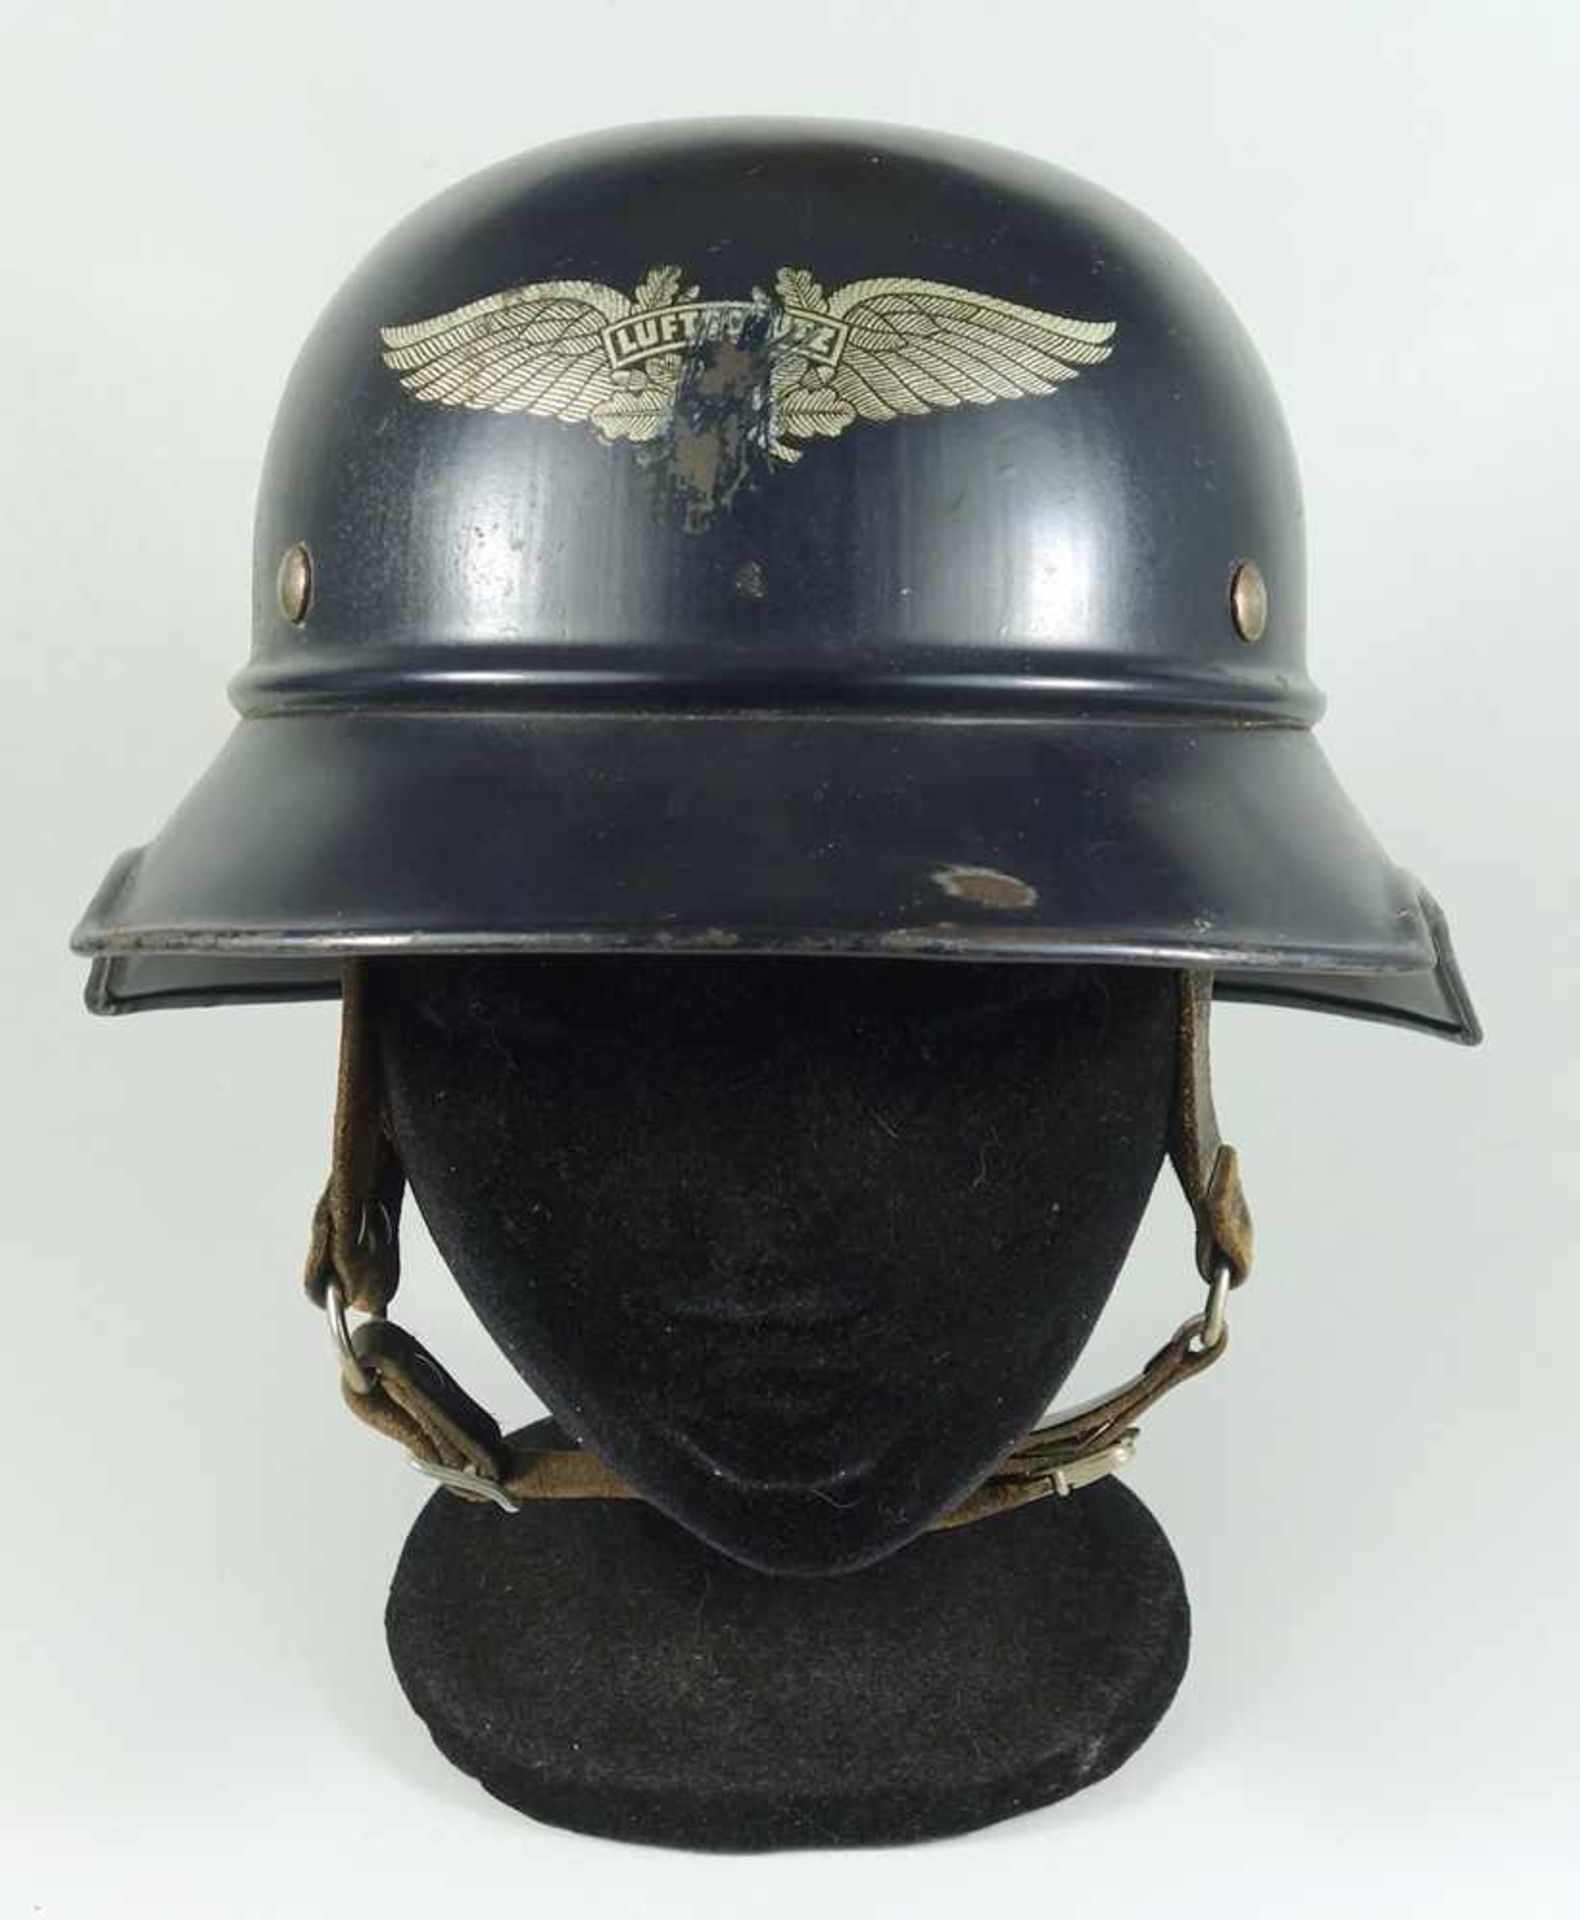 Reichsluftschutzbund - Stahlhelm, WK II, sogenannter "Gladiator Helm", blaugraue Lackierung, mit